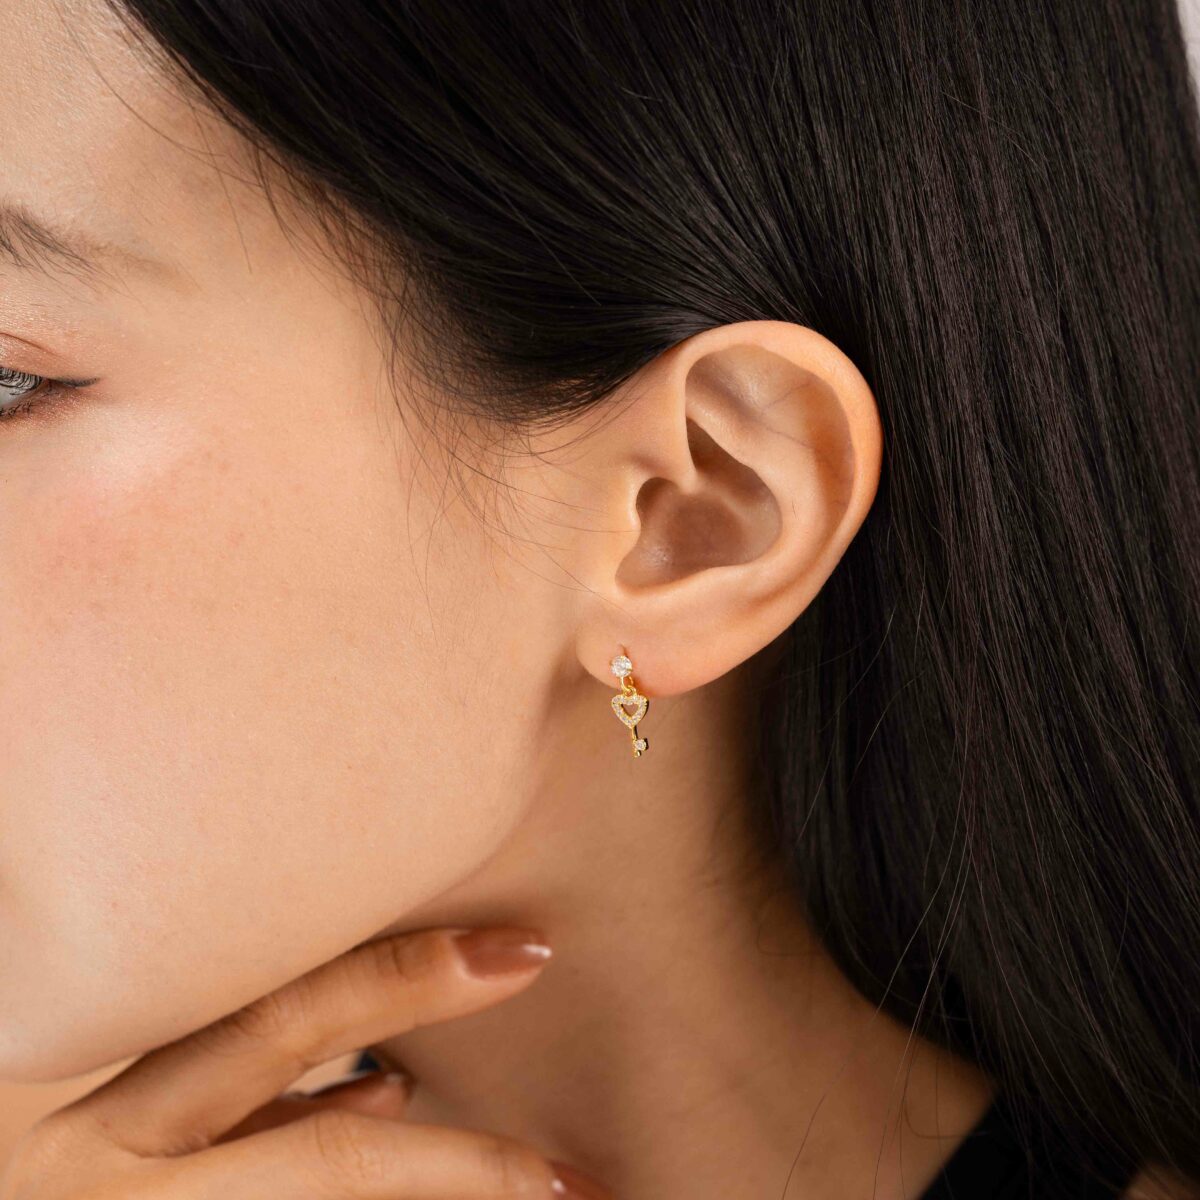 https://m.clubbella.co/product/alicia-earrings-24k-gold-plated/ HEART KEY EARRINGS (3)